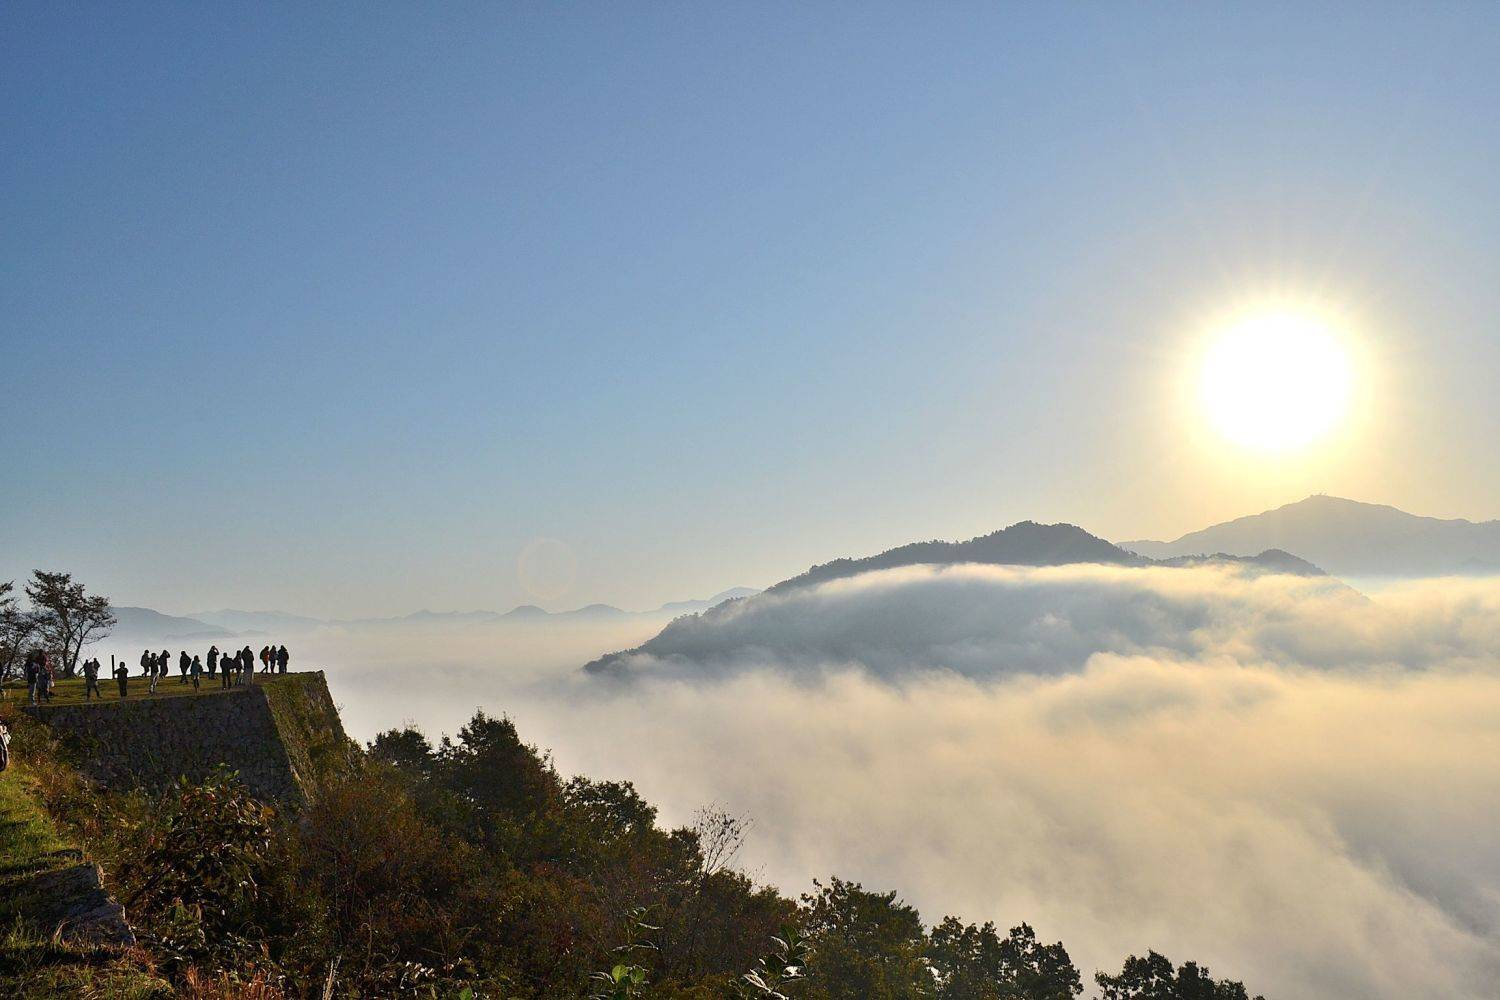 竹田城跡で雲海を見るためのポイントまとめ 季節限定の絶景 Triipnow